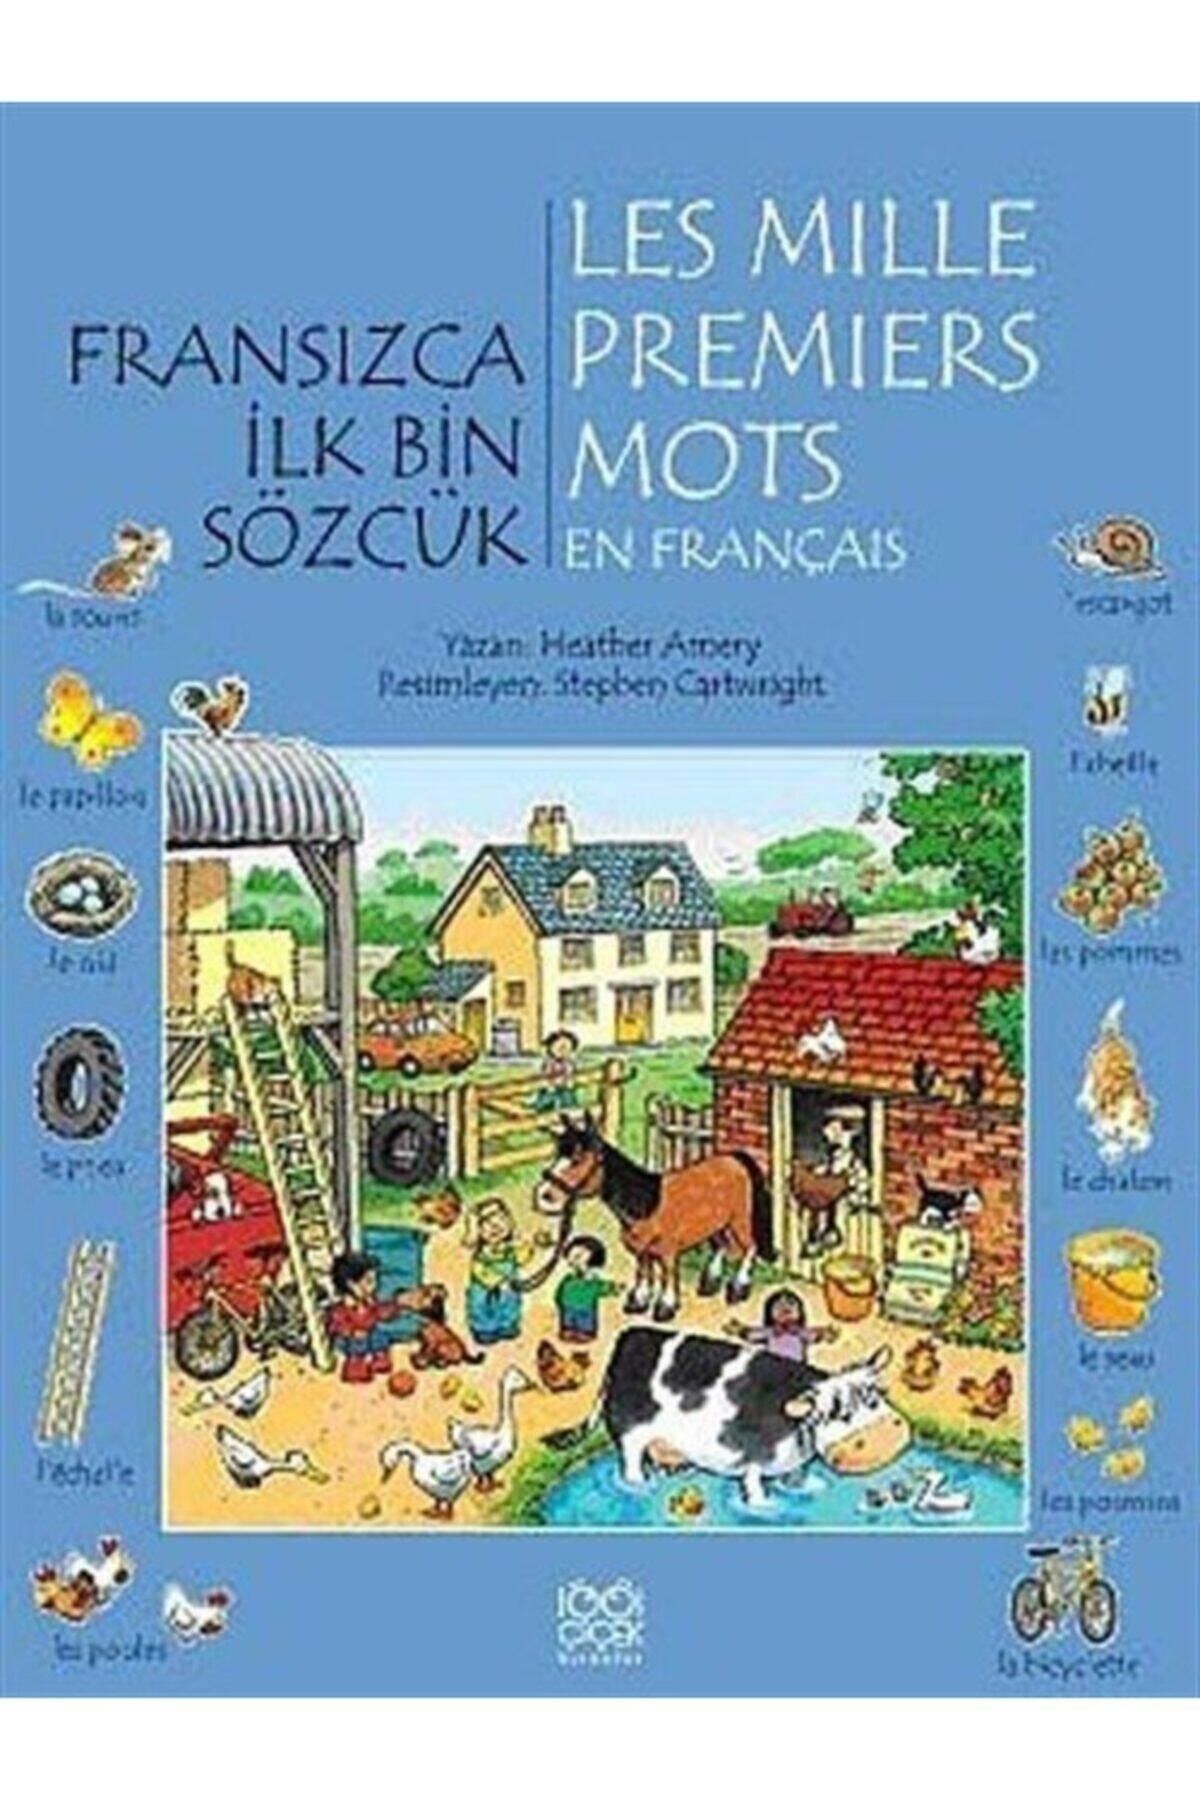 1001 Çiçek Kitaplar Fransızca Ilk Bin Sözcük - Les Mille Premiers Mots En Français Heather Amery - Heather Amery